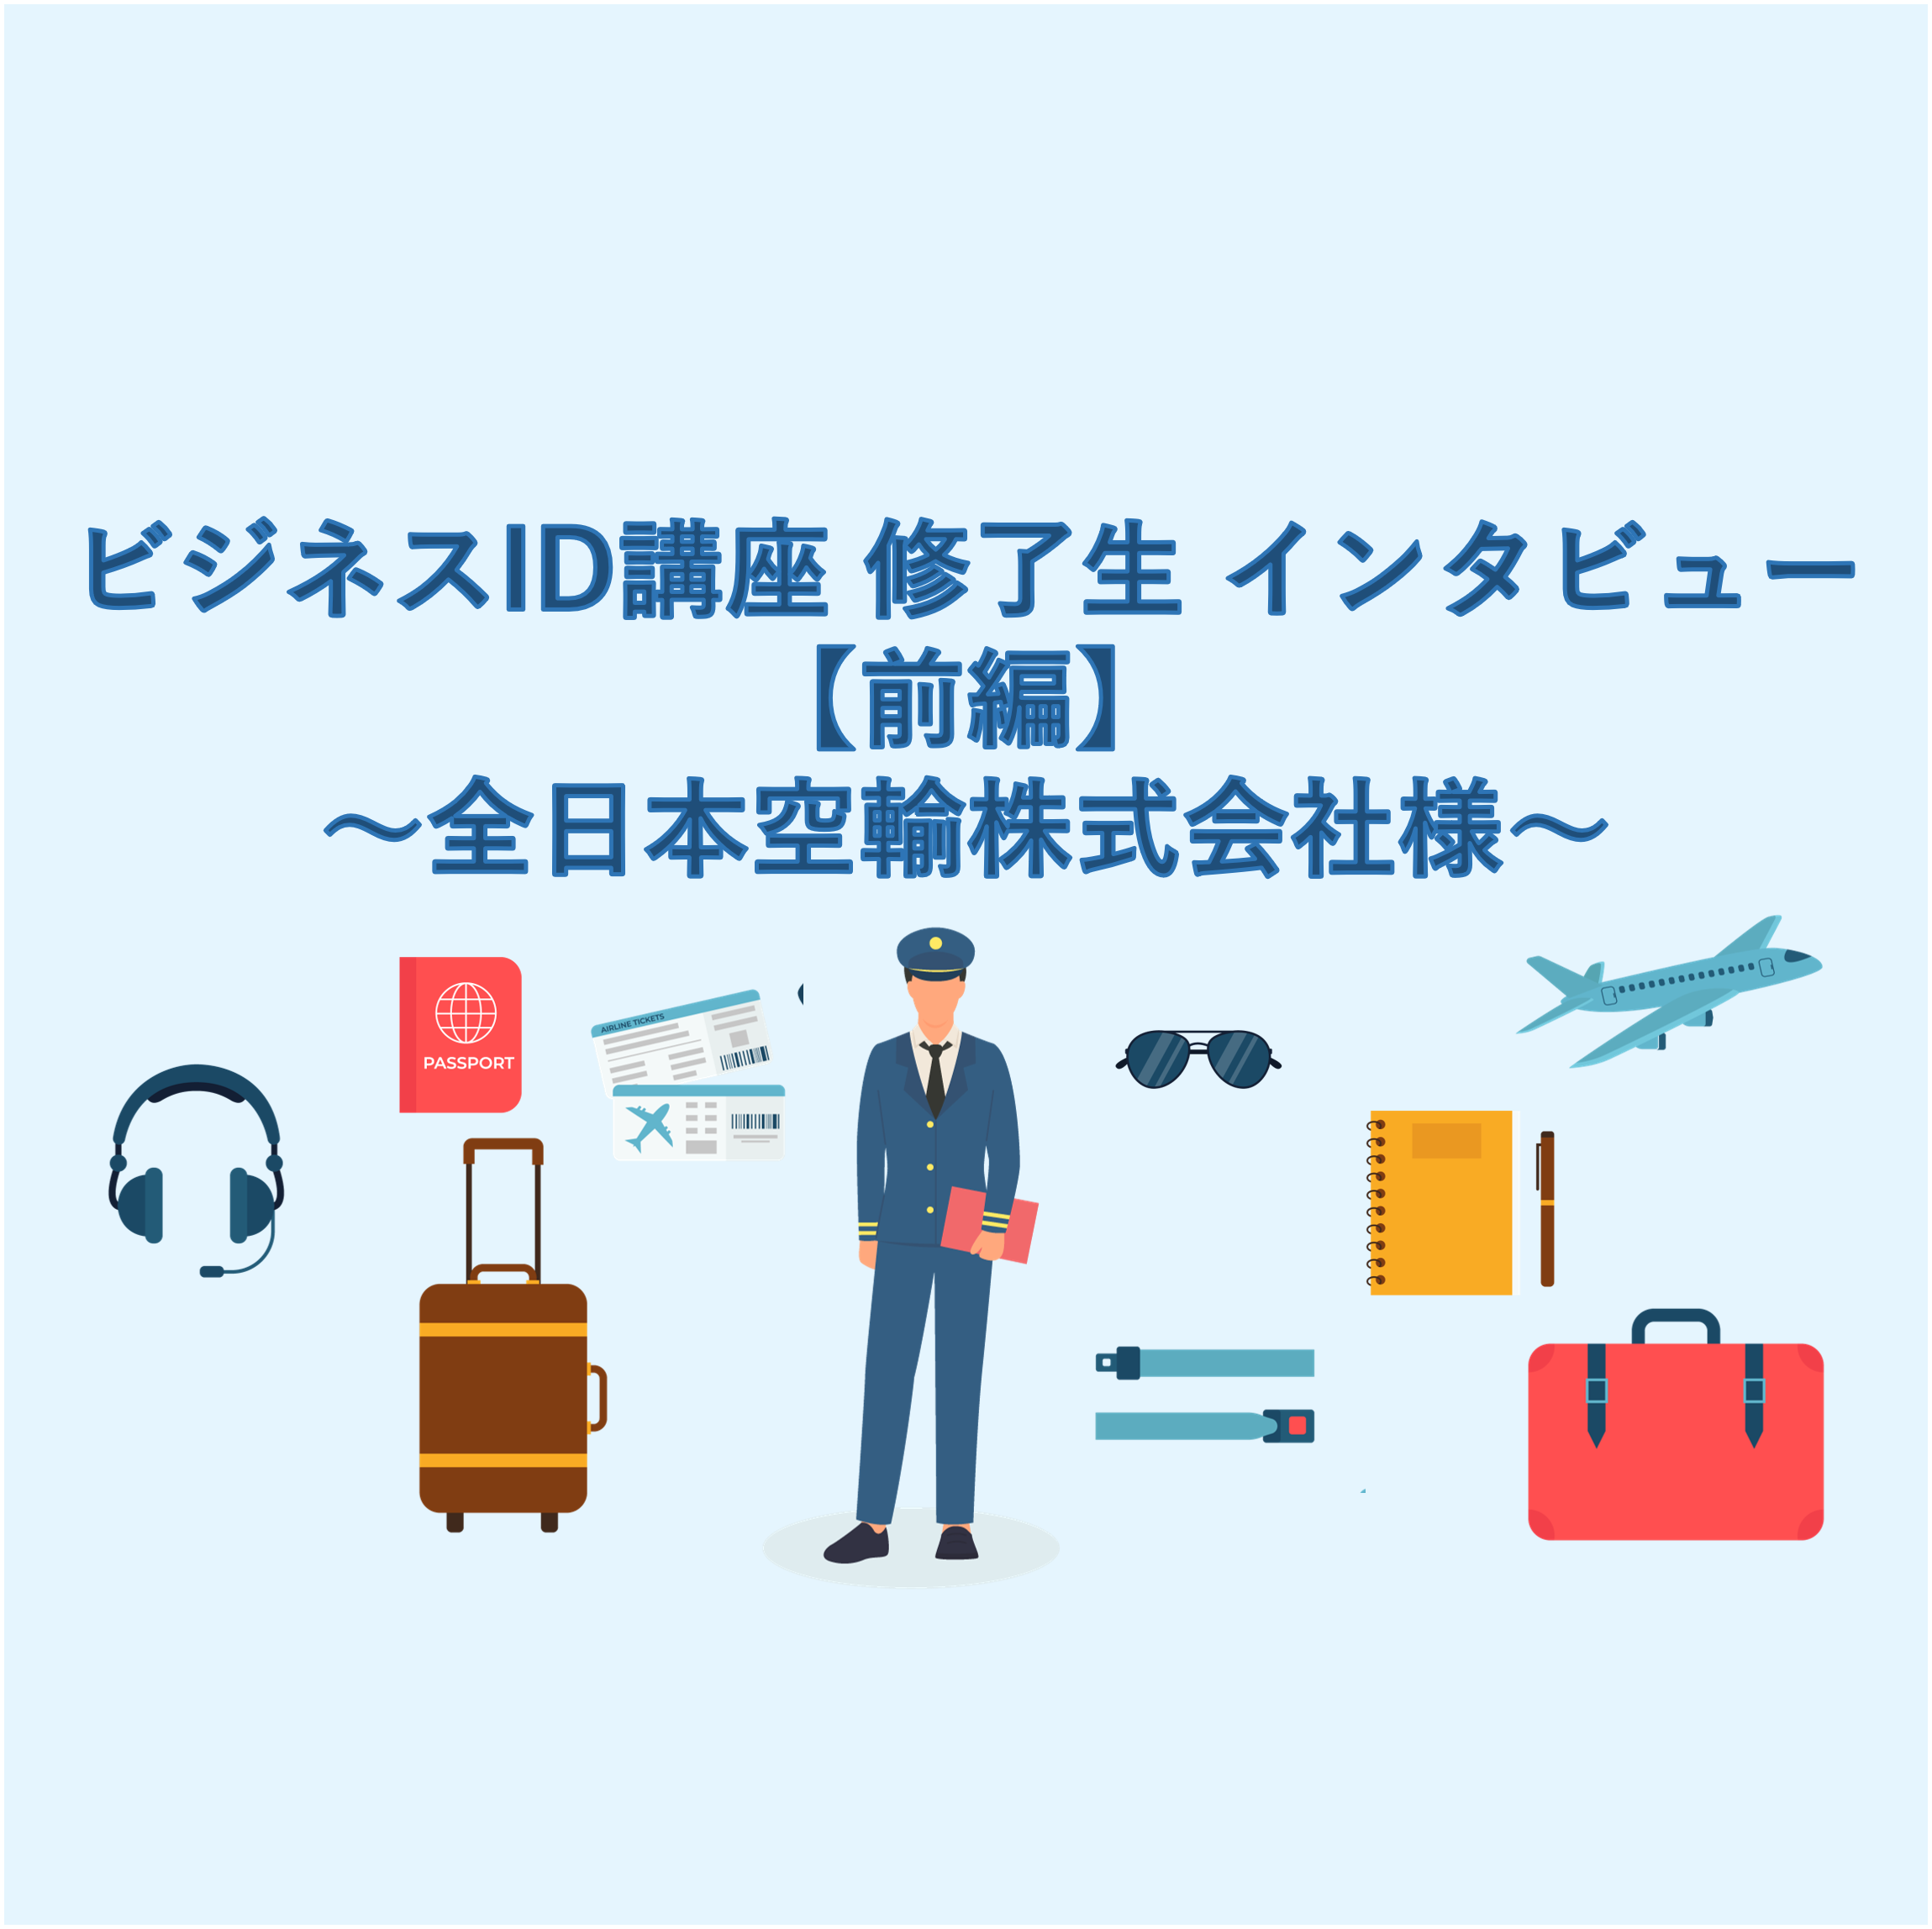 ビジネスID講座 修了生 インタビュー 【前編】～全日本空輸株式会社様～